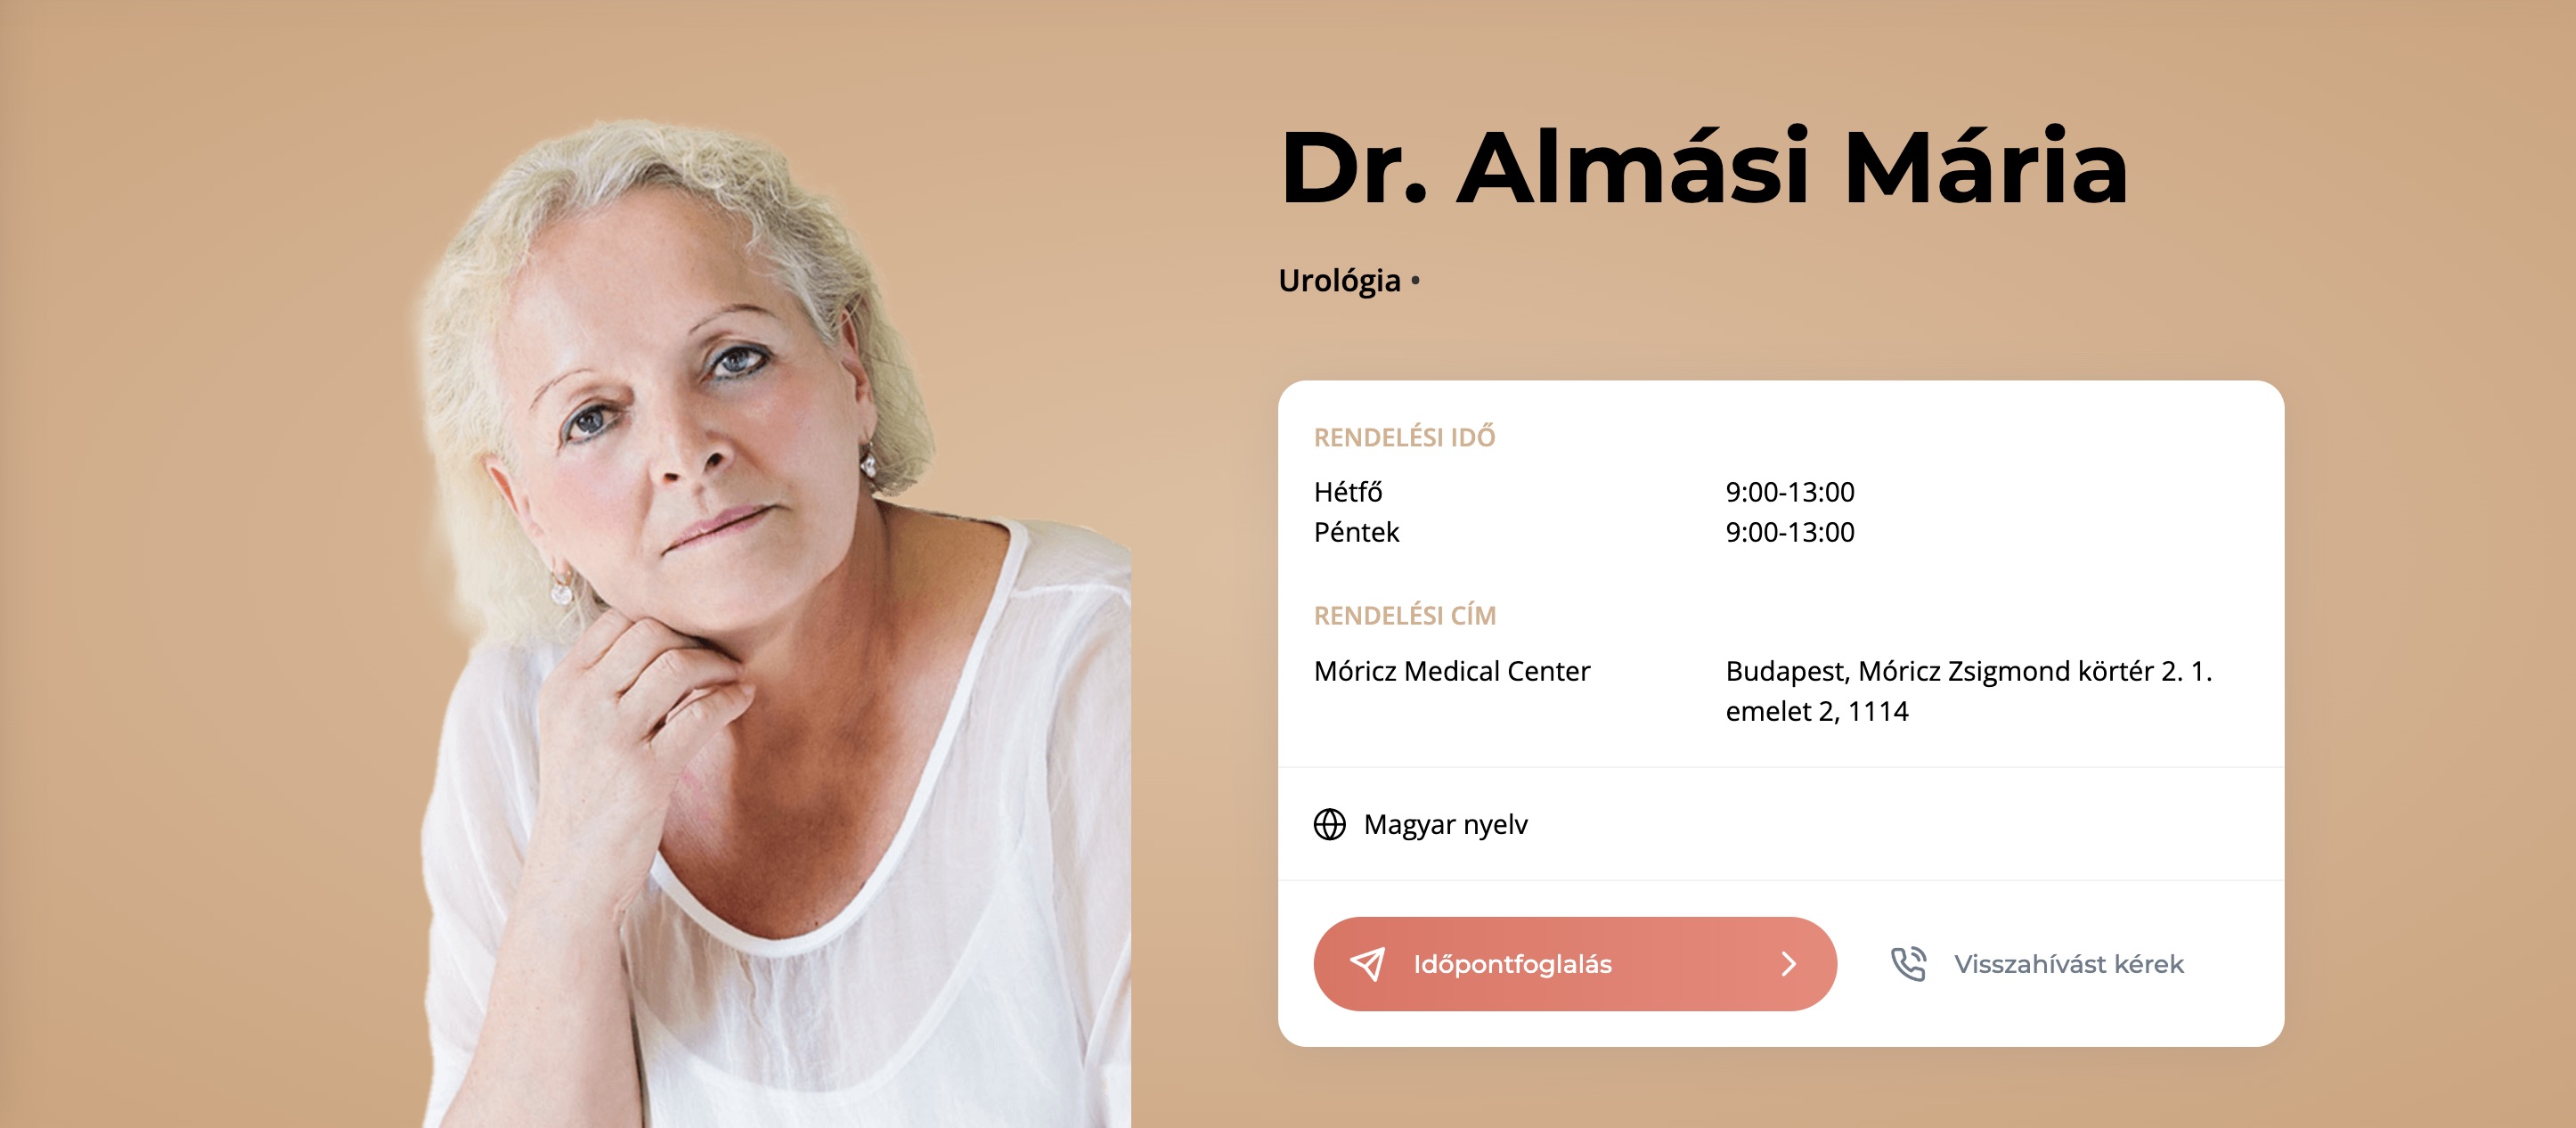 Dr Almási Mária Urológus szakrendelés urológiai magánrendelés XI. kerület - Móricz Medical Center